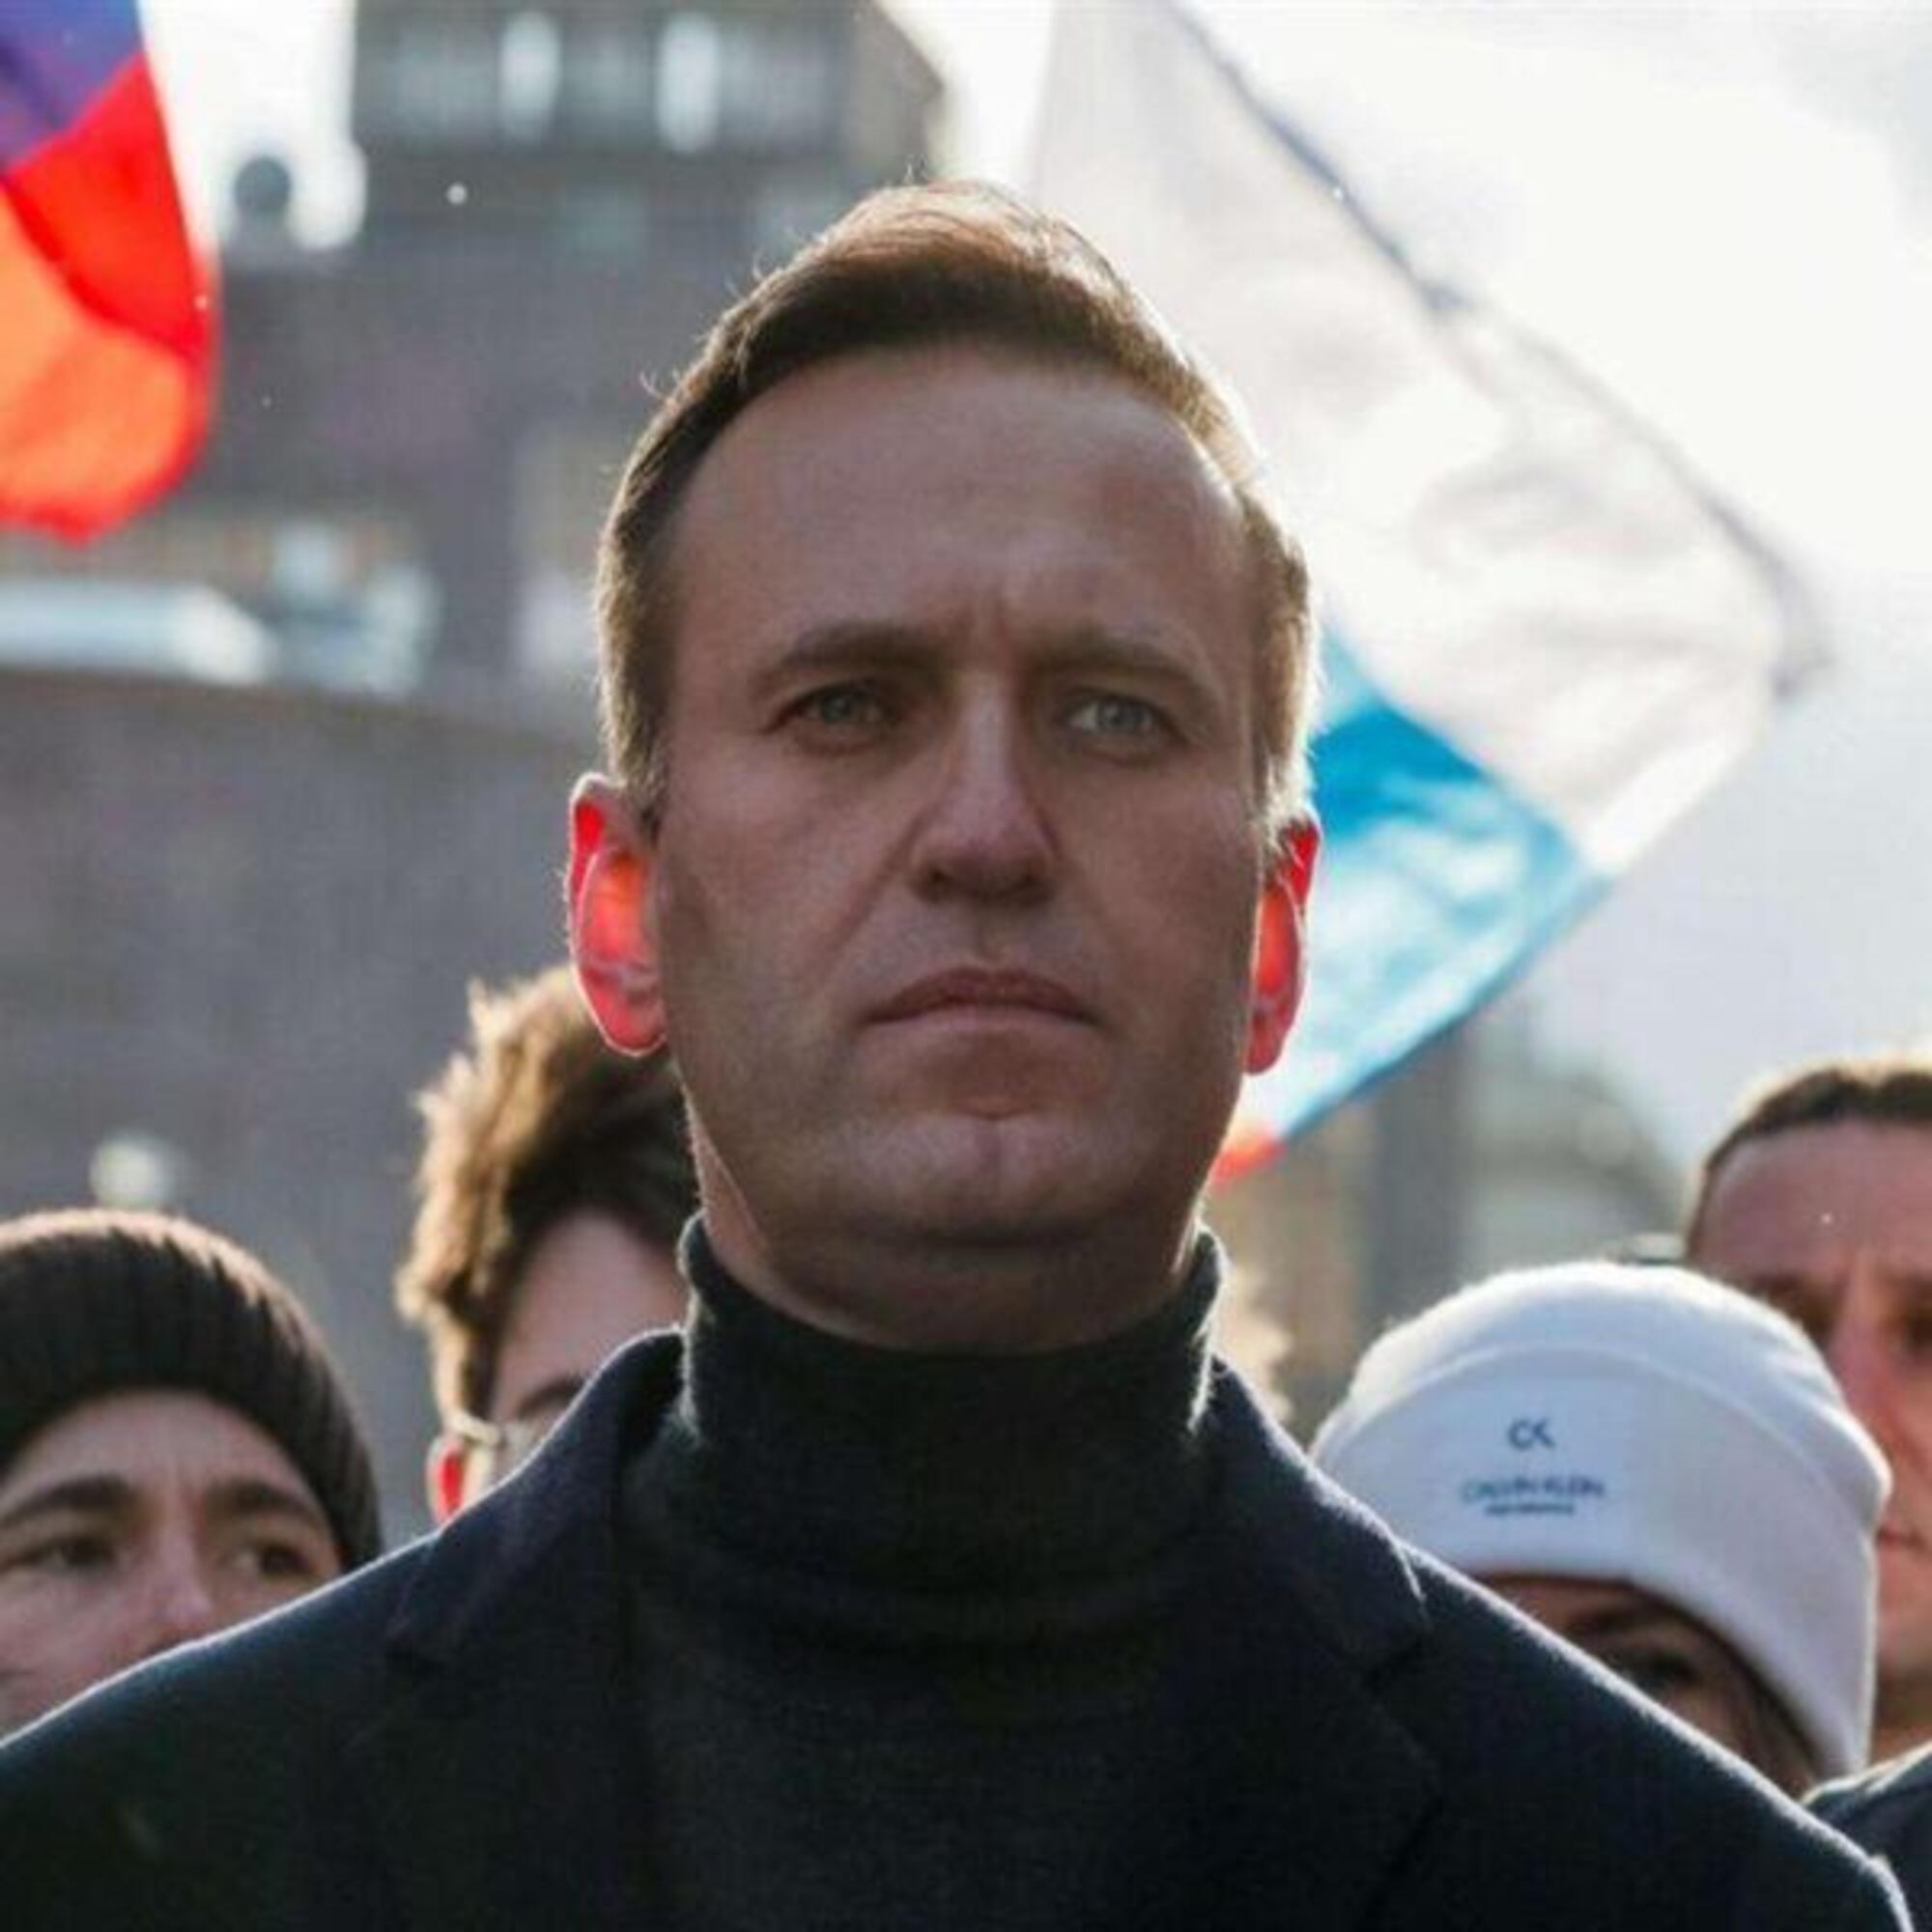 Aleksej Anatolevicˇ Navalny